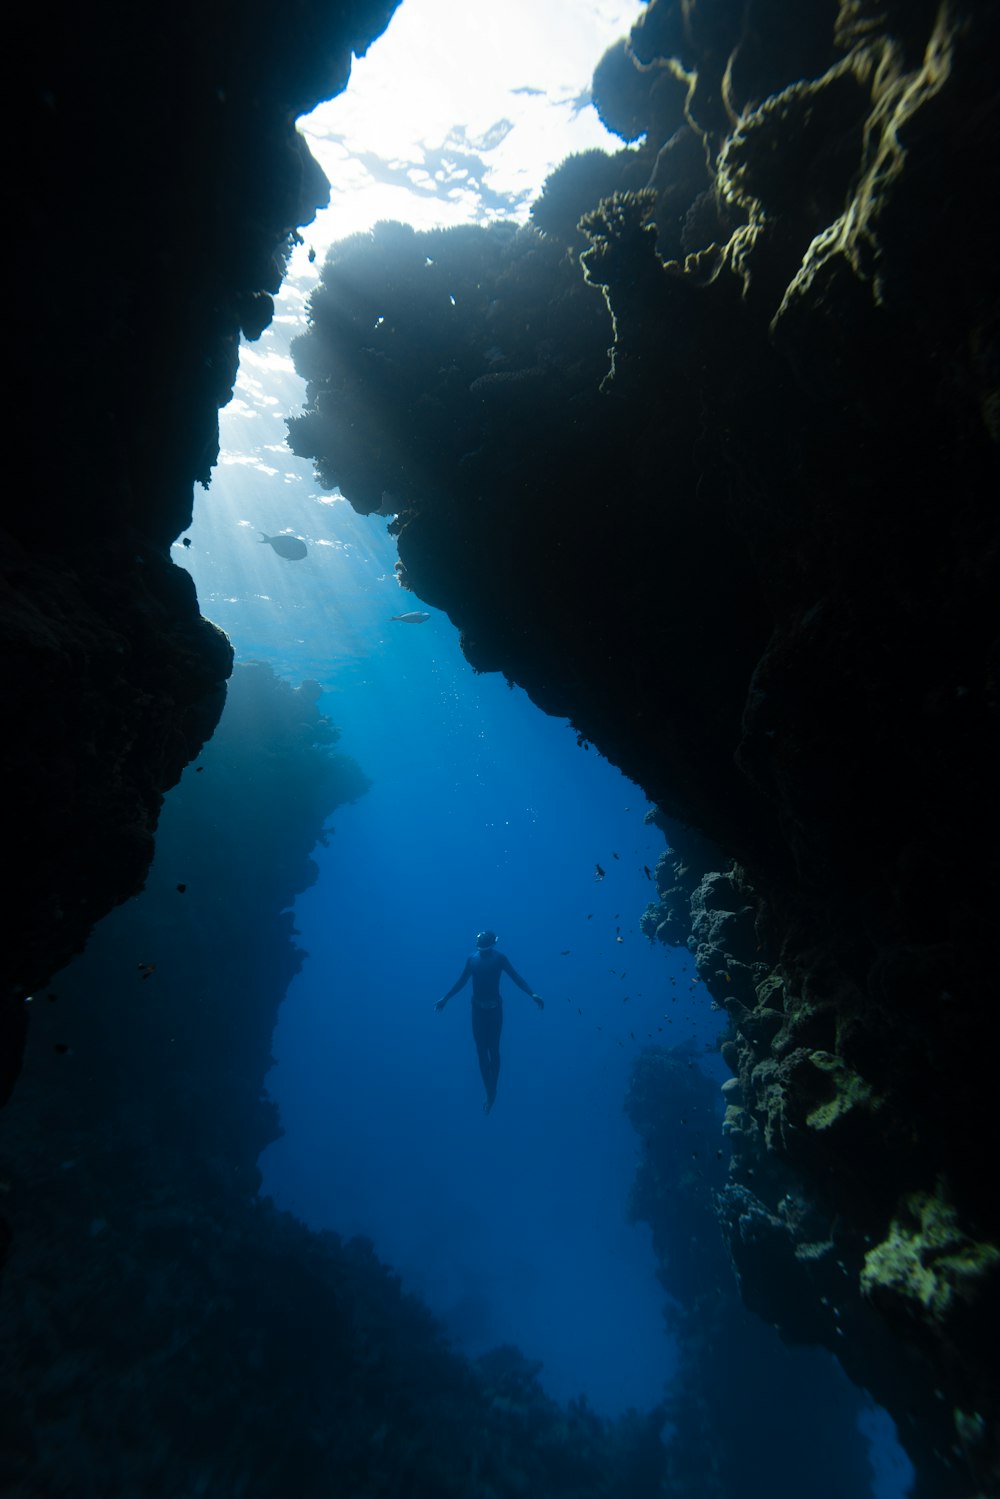 eine Person, die in der Nähe einer Höhle im Wasser schwimmt